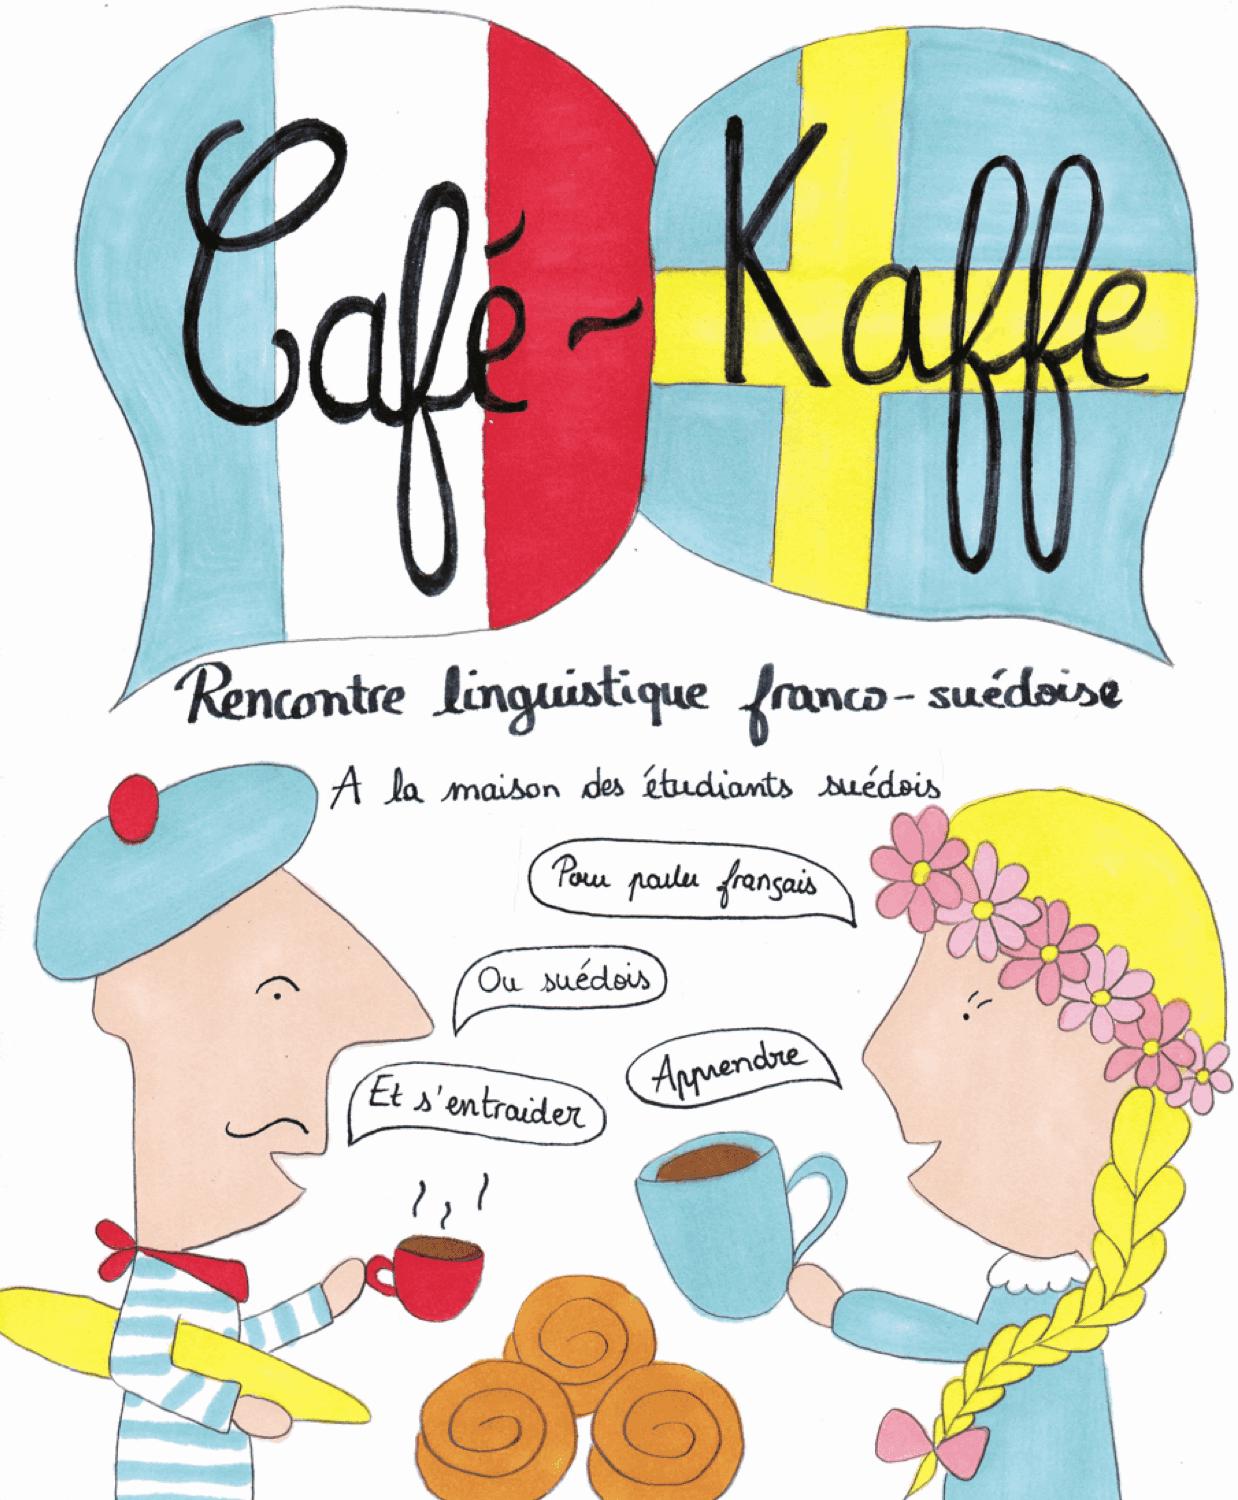 Café-Kaffe reprendra le jeudi 20 septembre, de 19h à 21h !